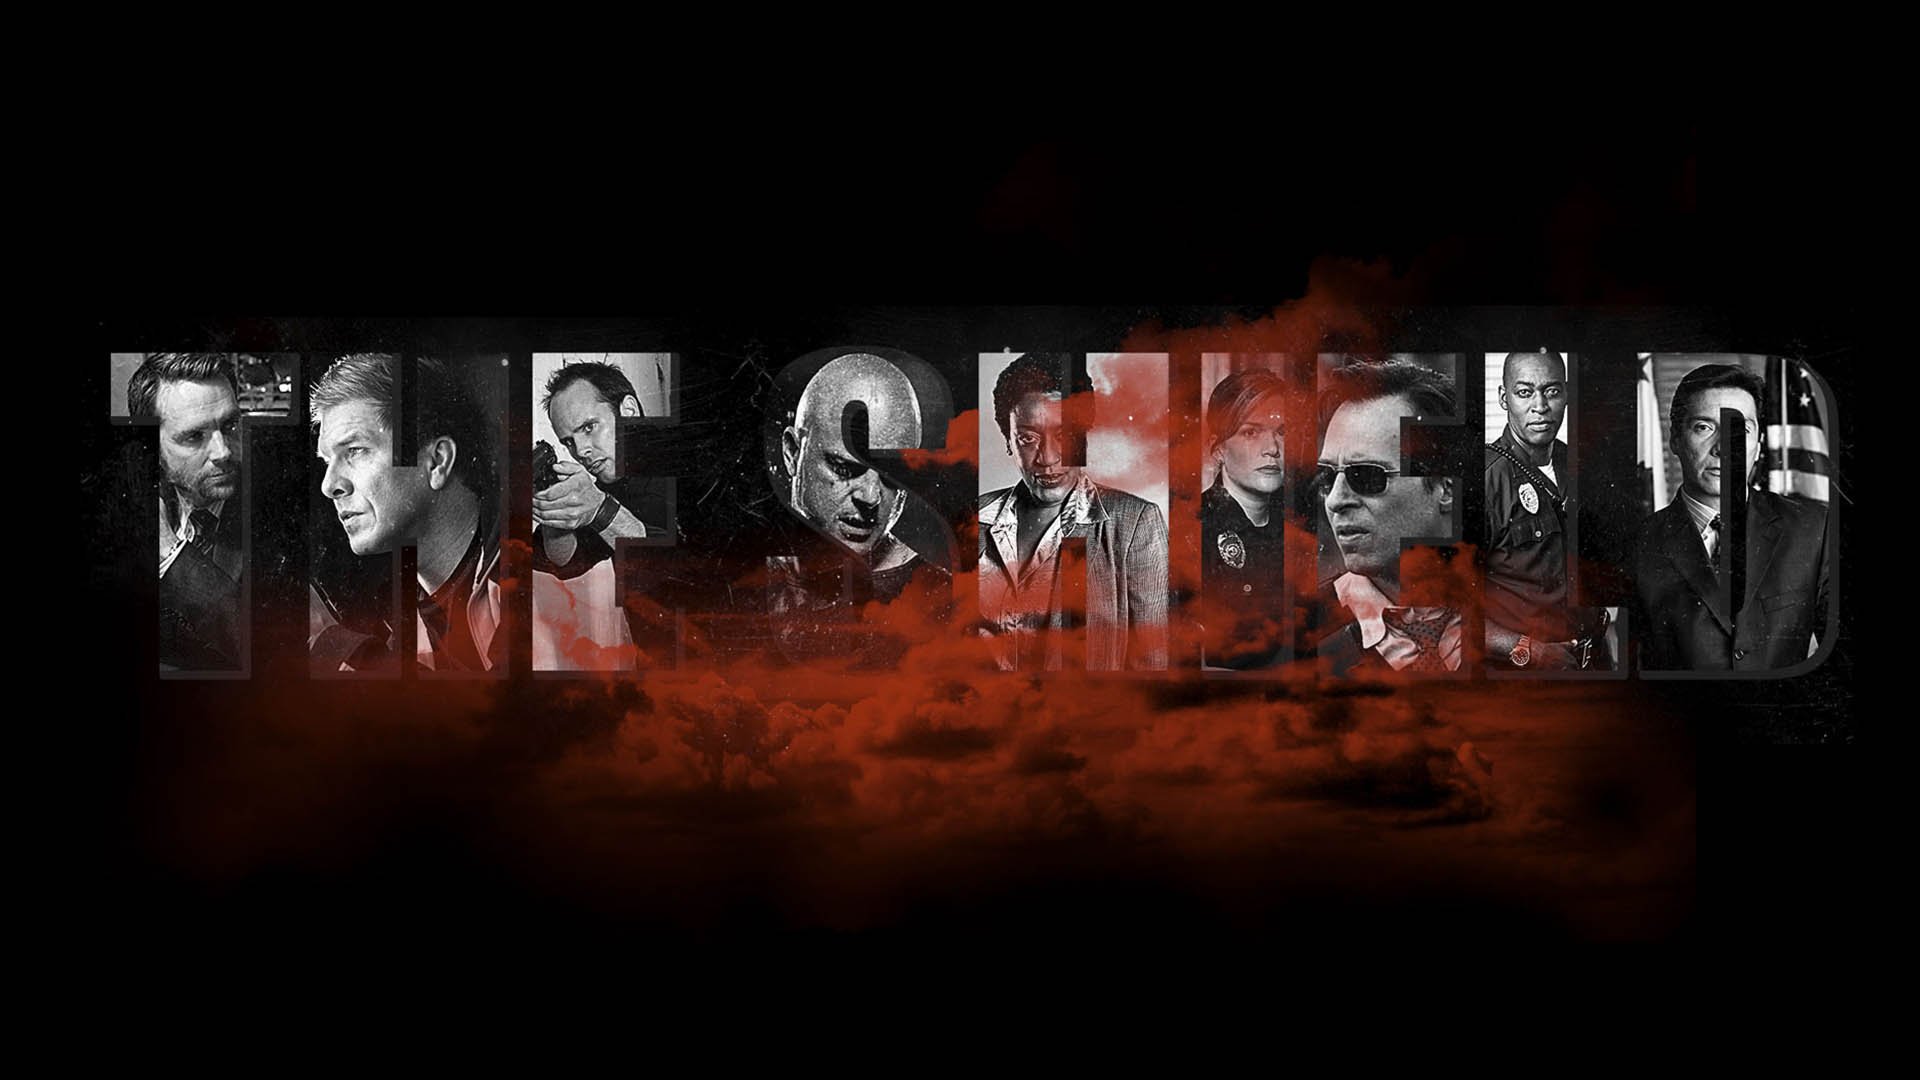 پوستر سریال The Shield با حضور شخصیت های اصلی آن در حروف اسم این سریال 